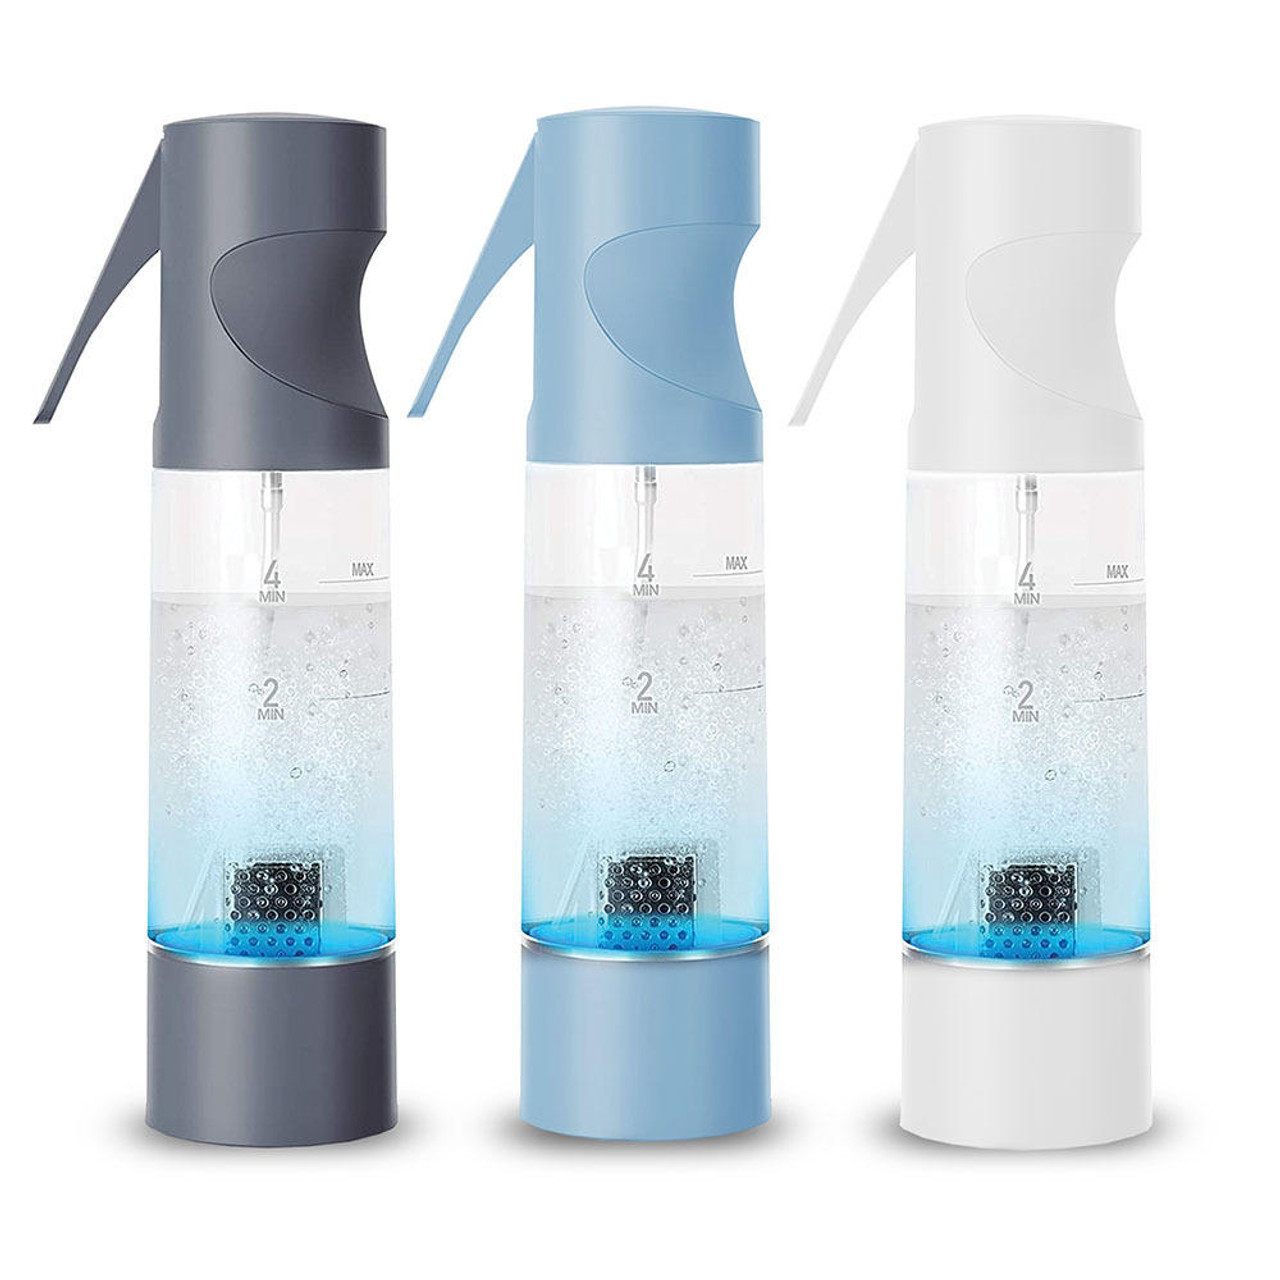 Dr.Ozone Smart Clean Pro Multi-Purpose Deodorizer